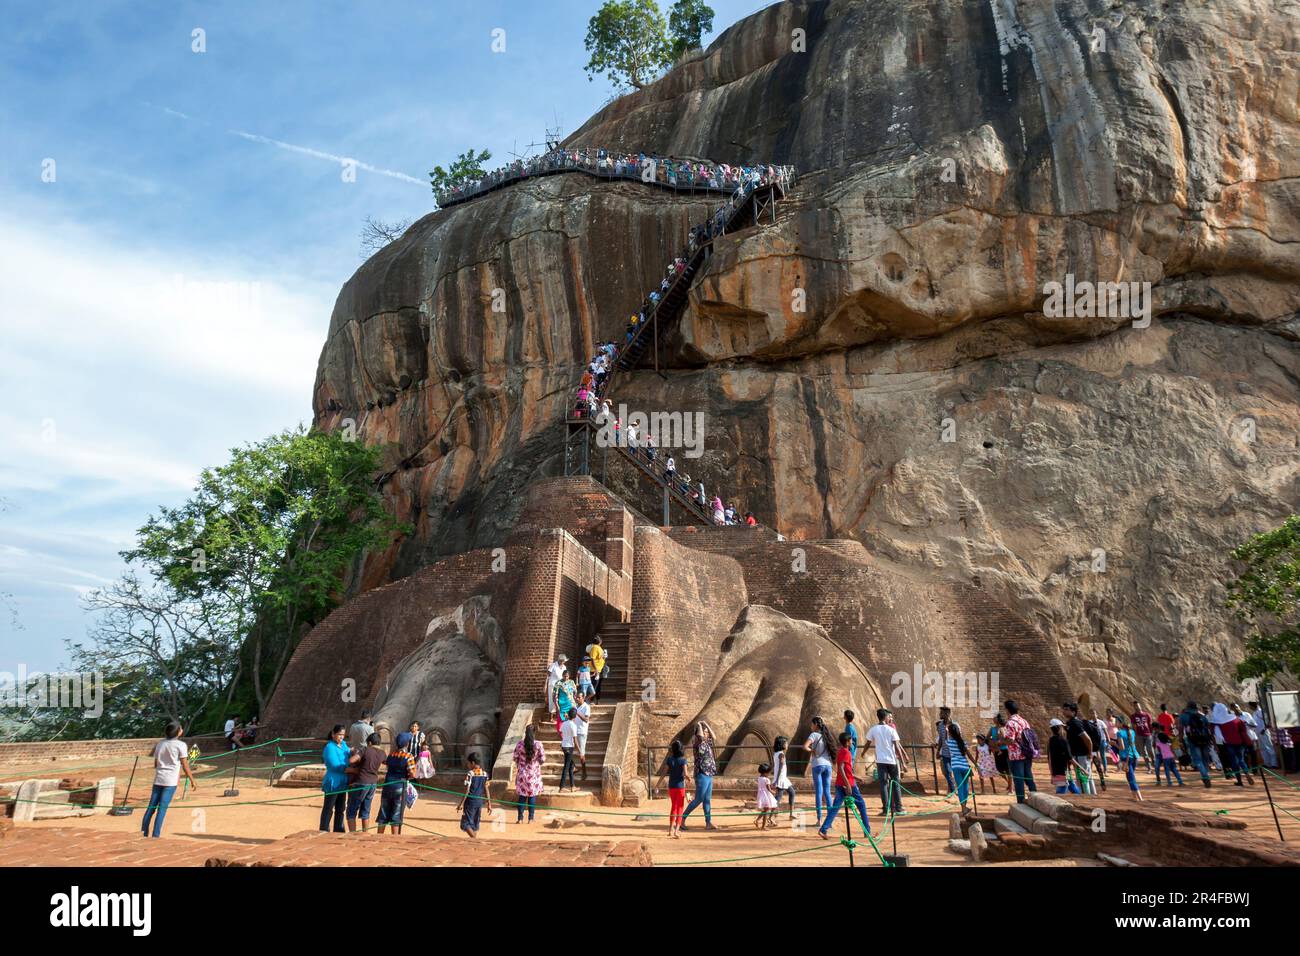 A view from the ancient Lion Platform at Sigiriya Rock Fortress at Sigiriya in central Sri Lanka looking towards the rocks summit. Stock Photo